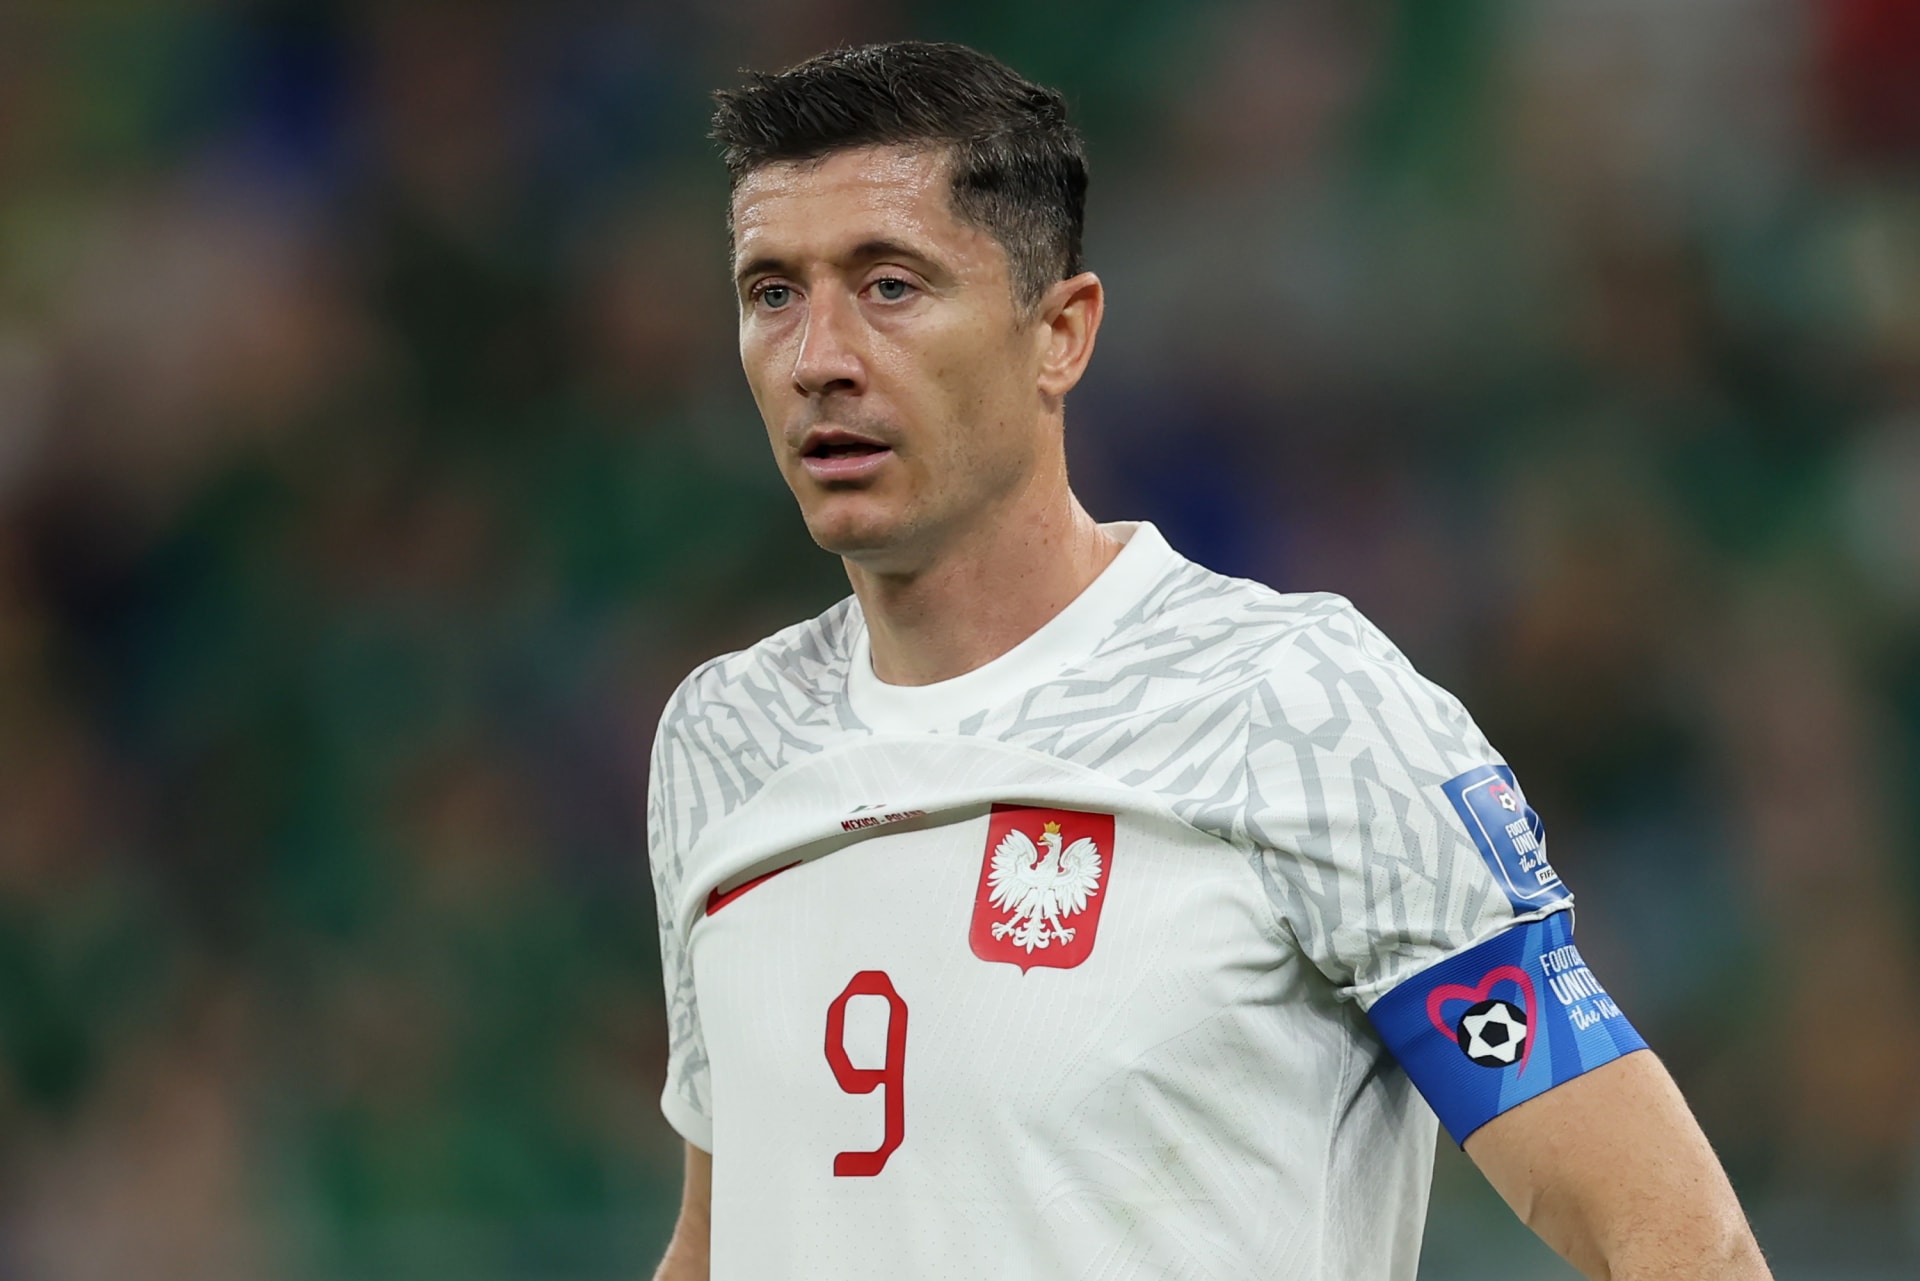 Robert Lewandowski Confirms Qatar World Cup Final Match was Best Ever